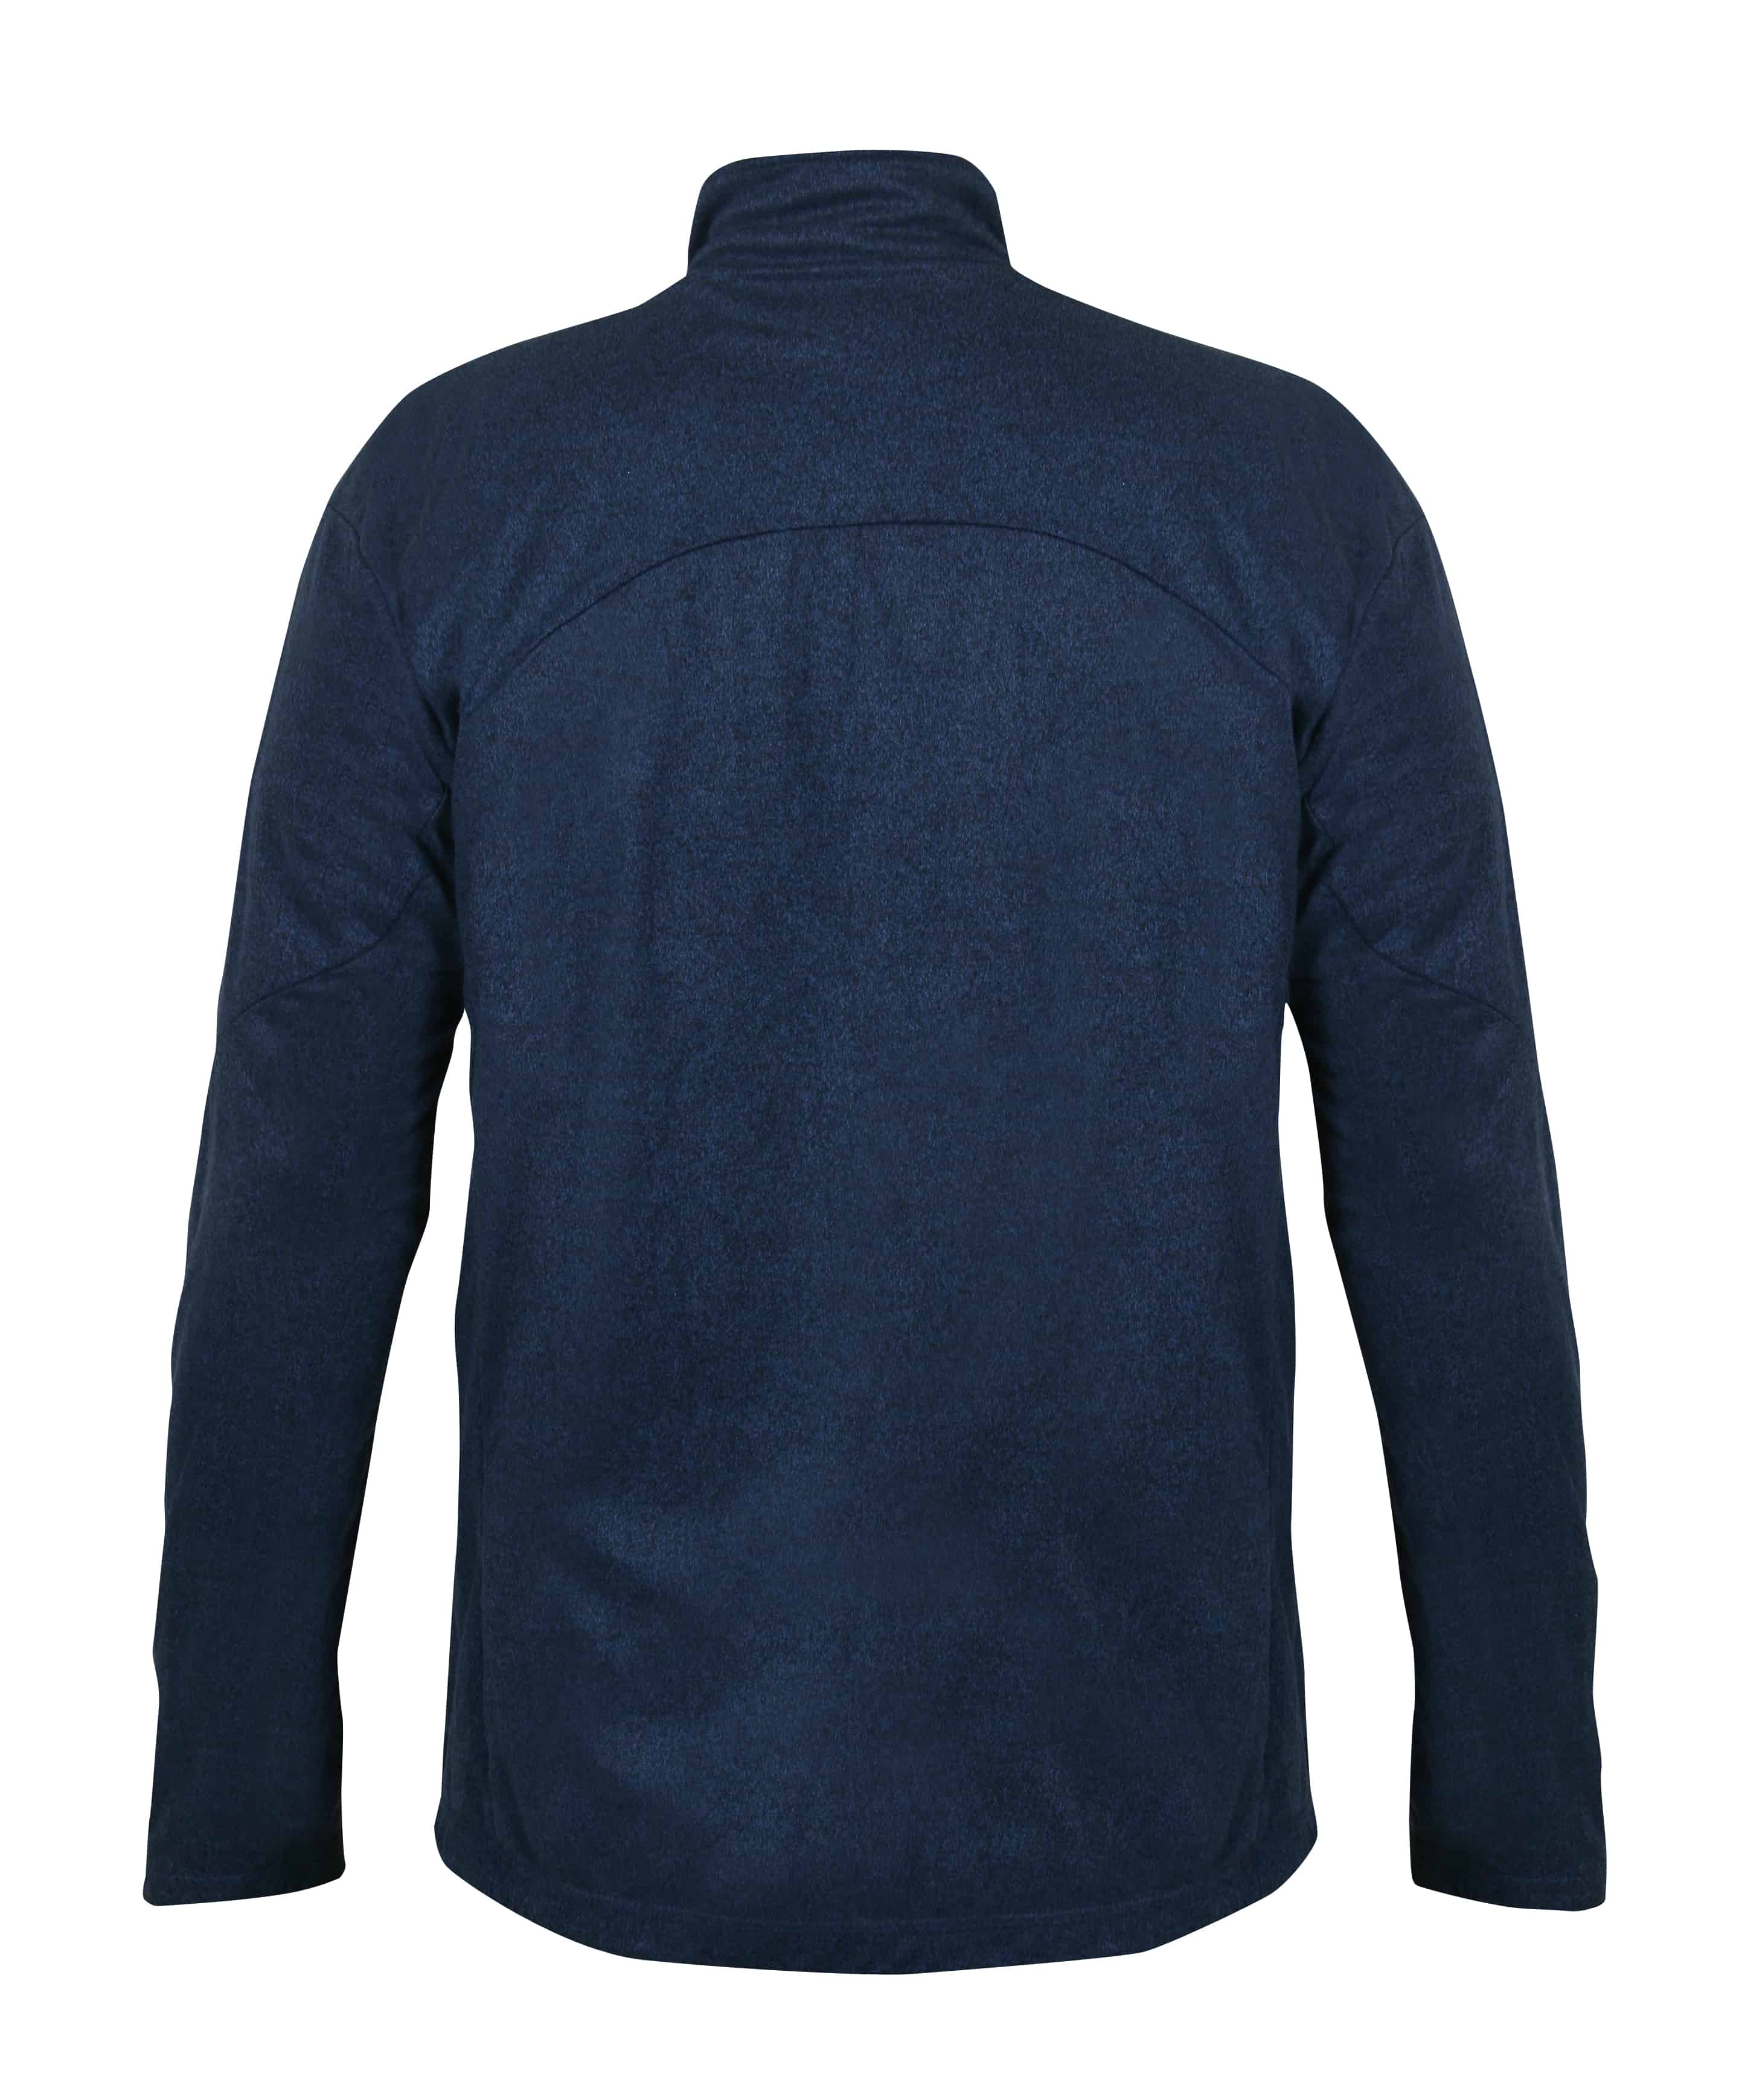 Paramo Men's Bentu Fleece Jacket Cobalt Marl | Free UK Delivery